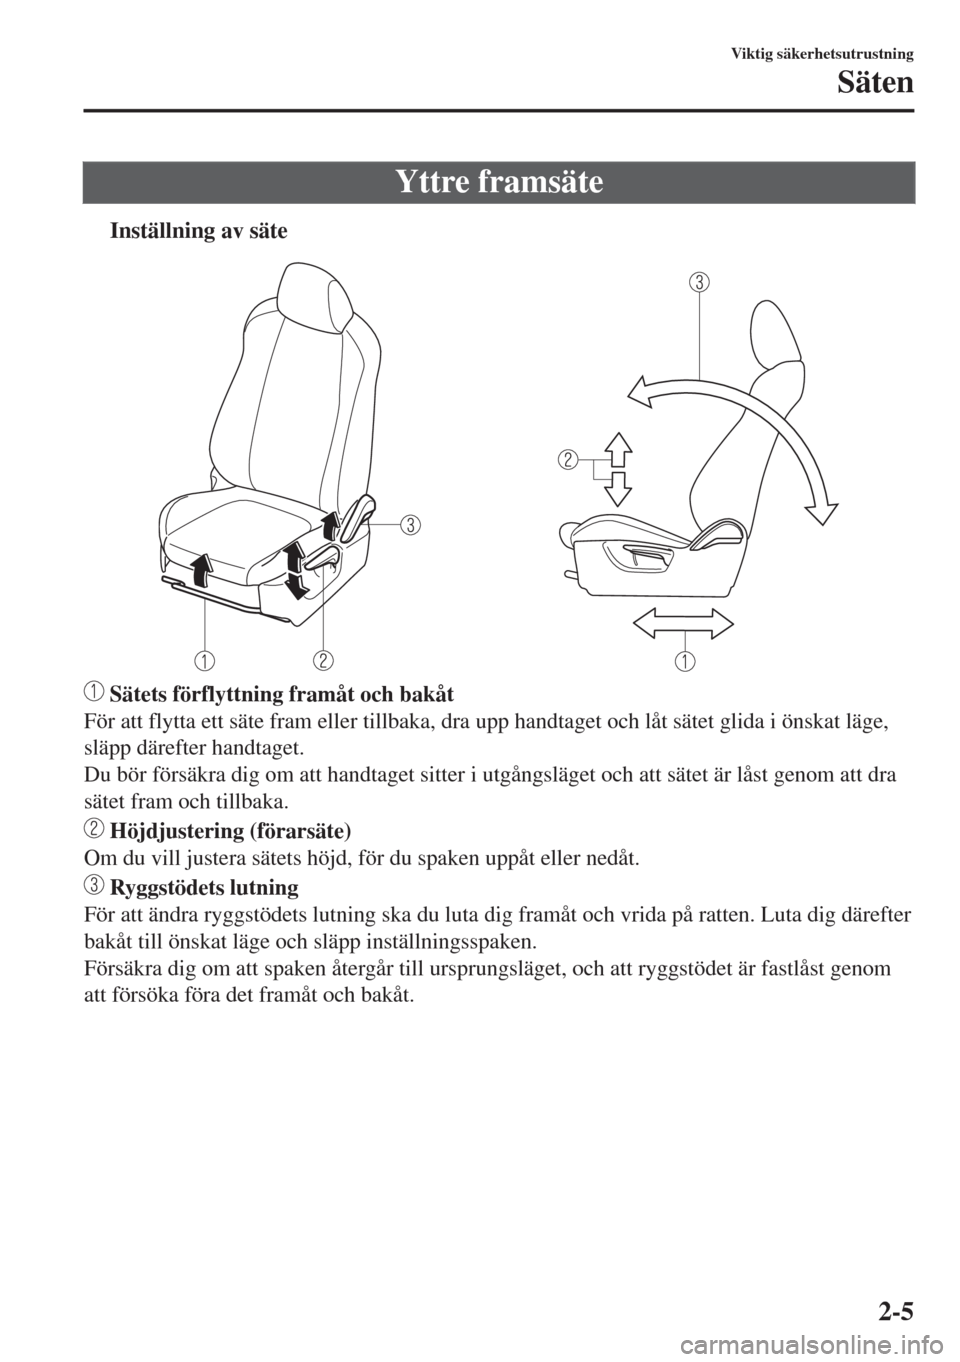 MAZDA MODEL CX-3 2015  Ägarmanual (in Swedish) Yttre framsäte
tInställning av säte
 Sätets förflyttning framåt och bakåt
För att flytta ett säte fram eller tillbaka, dra upp handtaget och låt sätet glida i önskat läge,
släpp därefte